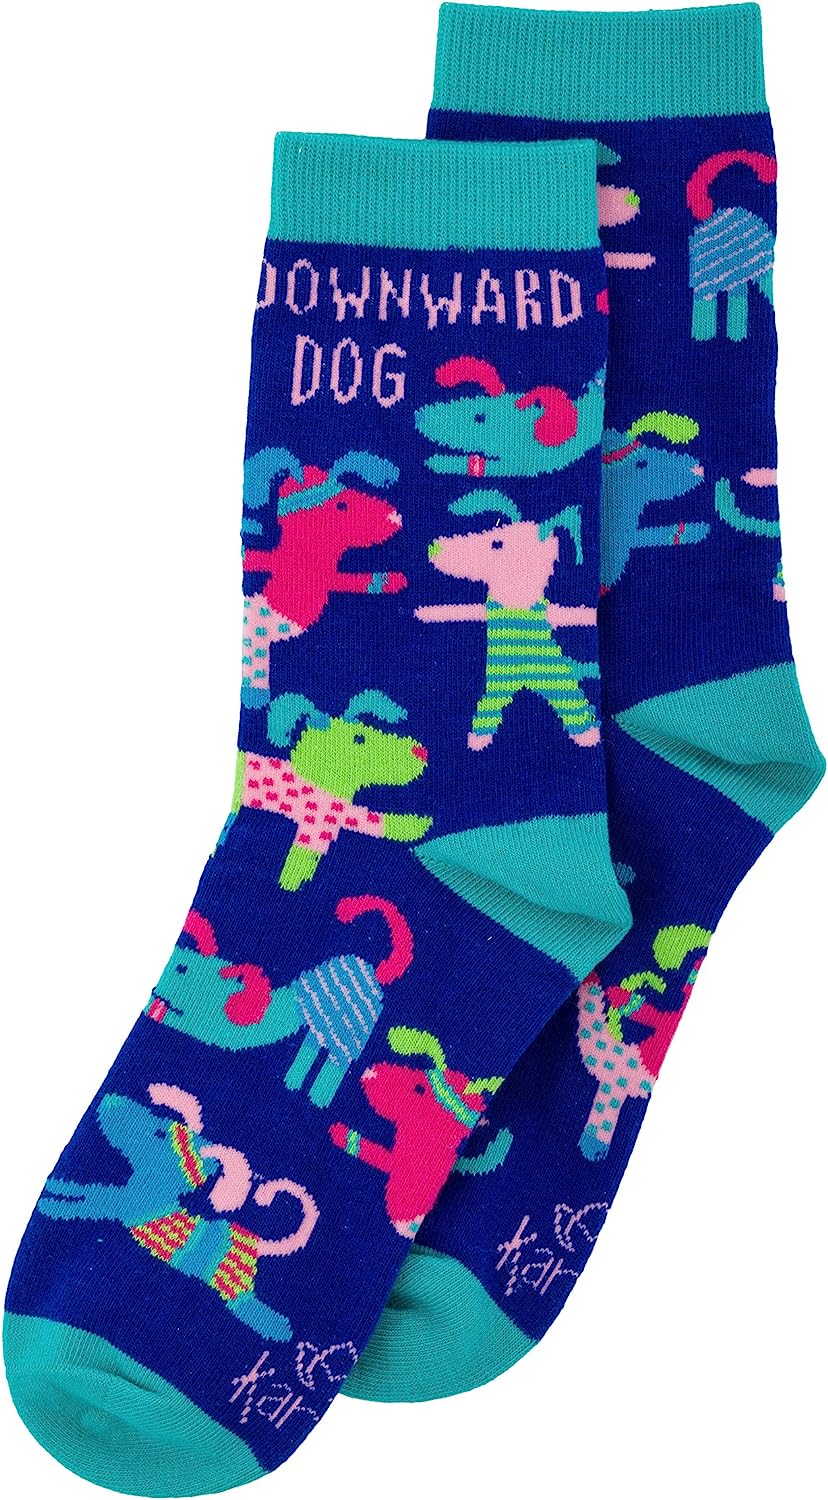 Downward Dog Socks